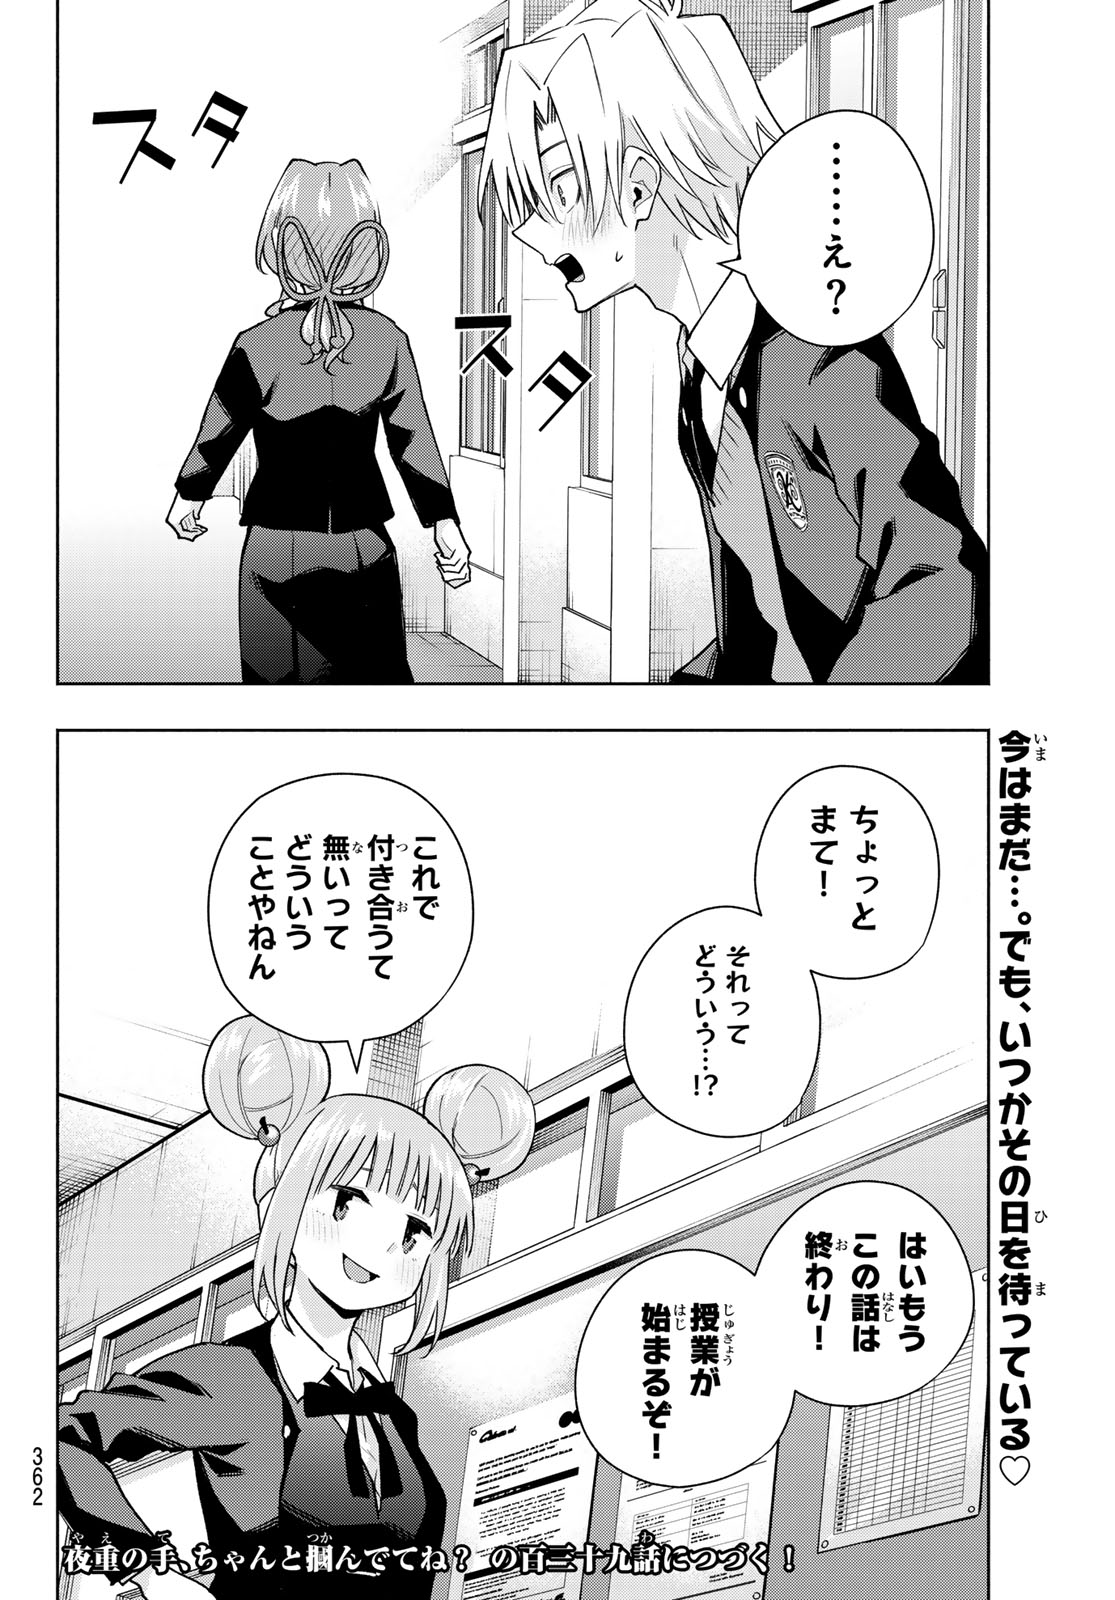 Amagami-san Chi no Enmusubi - Chapter 138 - Page 20